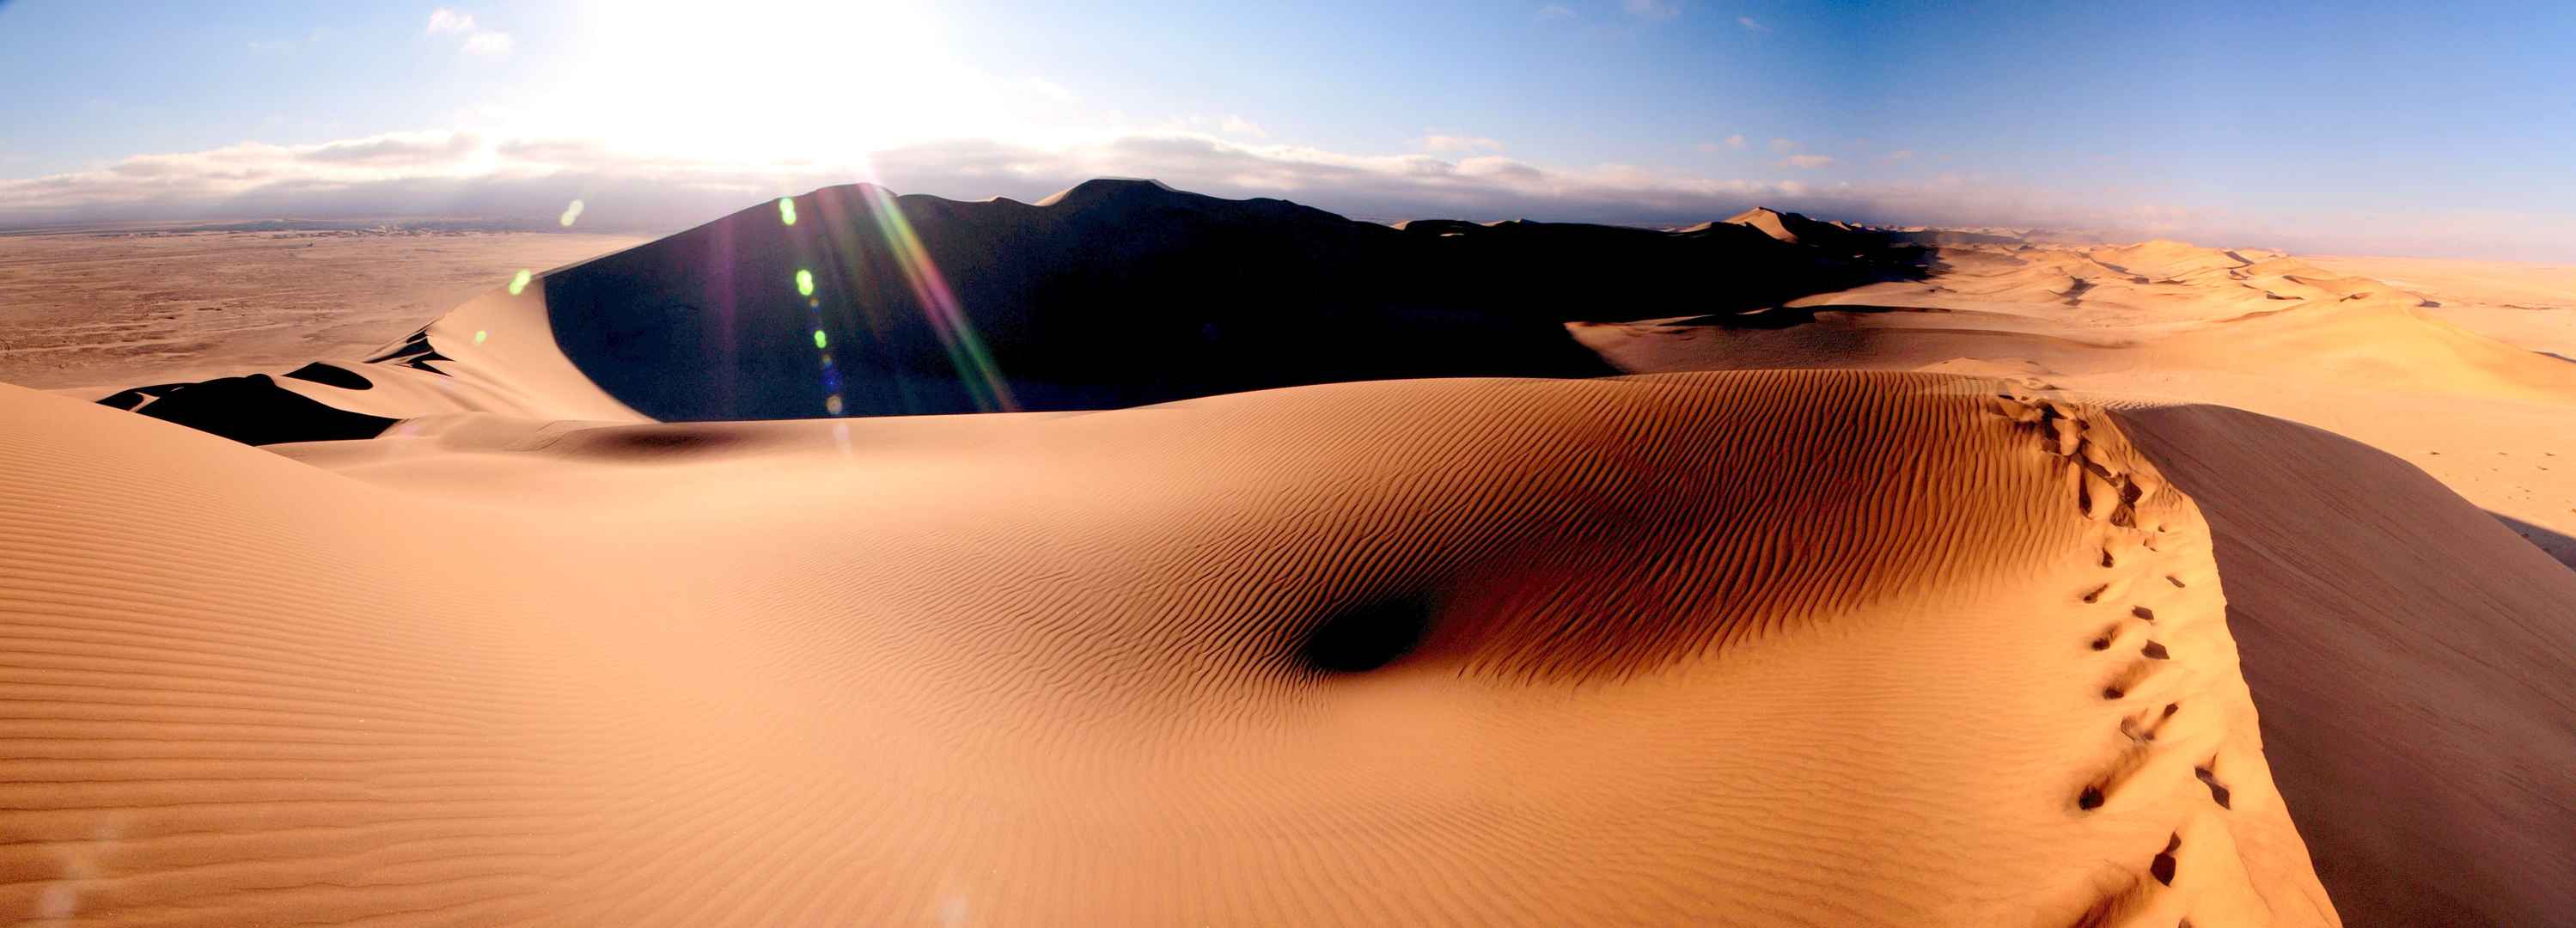 热带沙漠地貌7K壁纸-